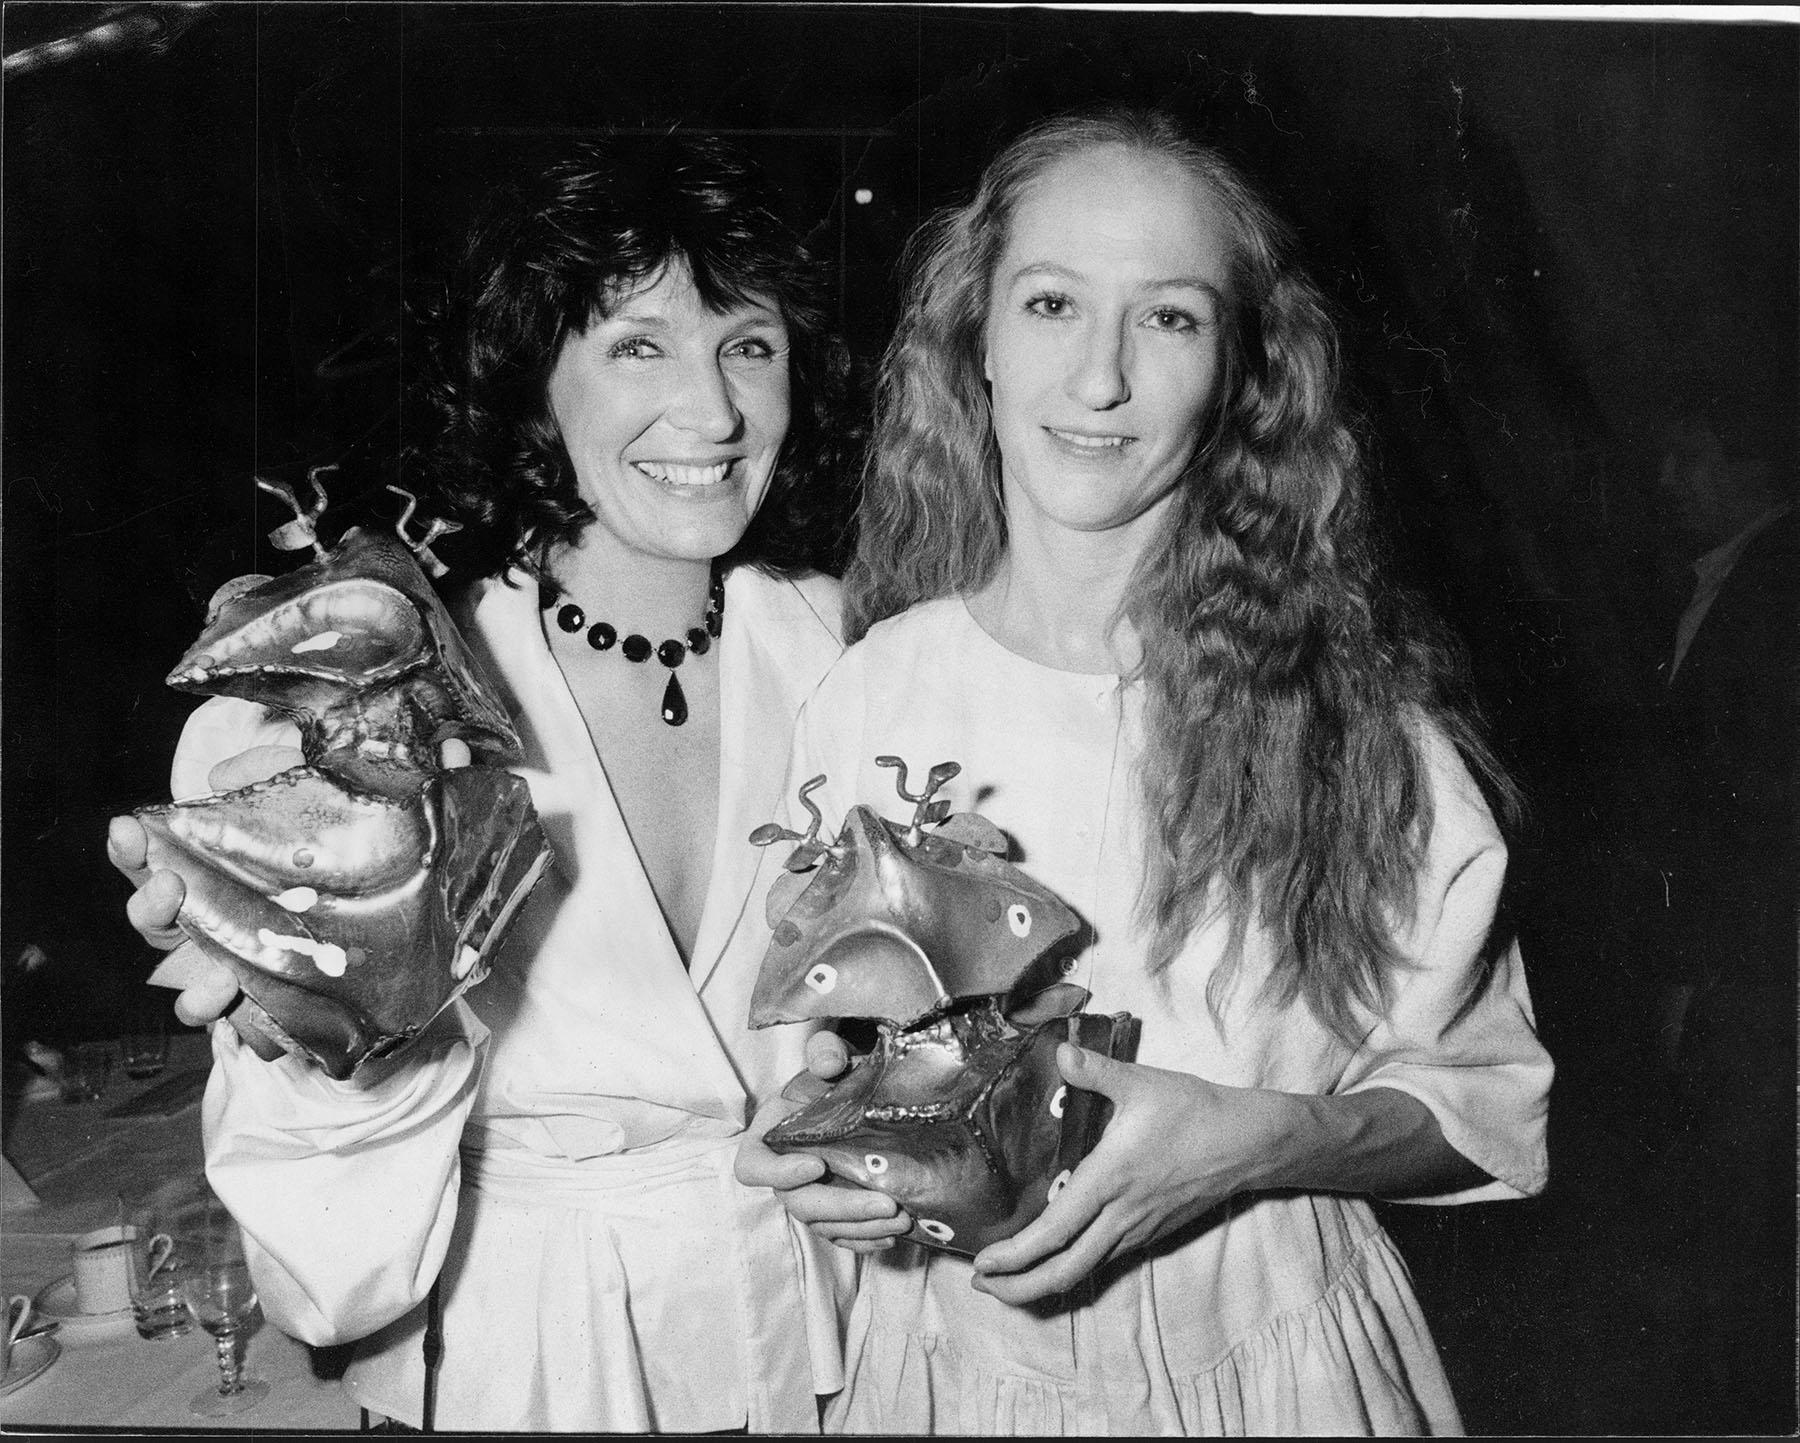 Kim Anderzon, har fått en guldbagge i kategorin bästa skådespelerska 1982-83 för sin roll i filmen Andra dansen Tillsammans med Malin Ek som fick en guldbagge i kategorin bästa skådespelerska 1982-83 för sin roll i filmen mamma.